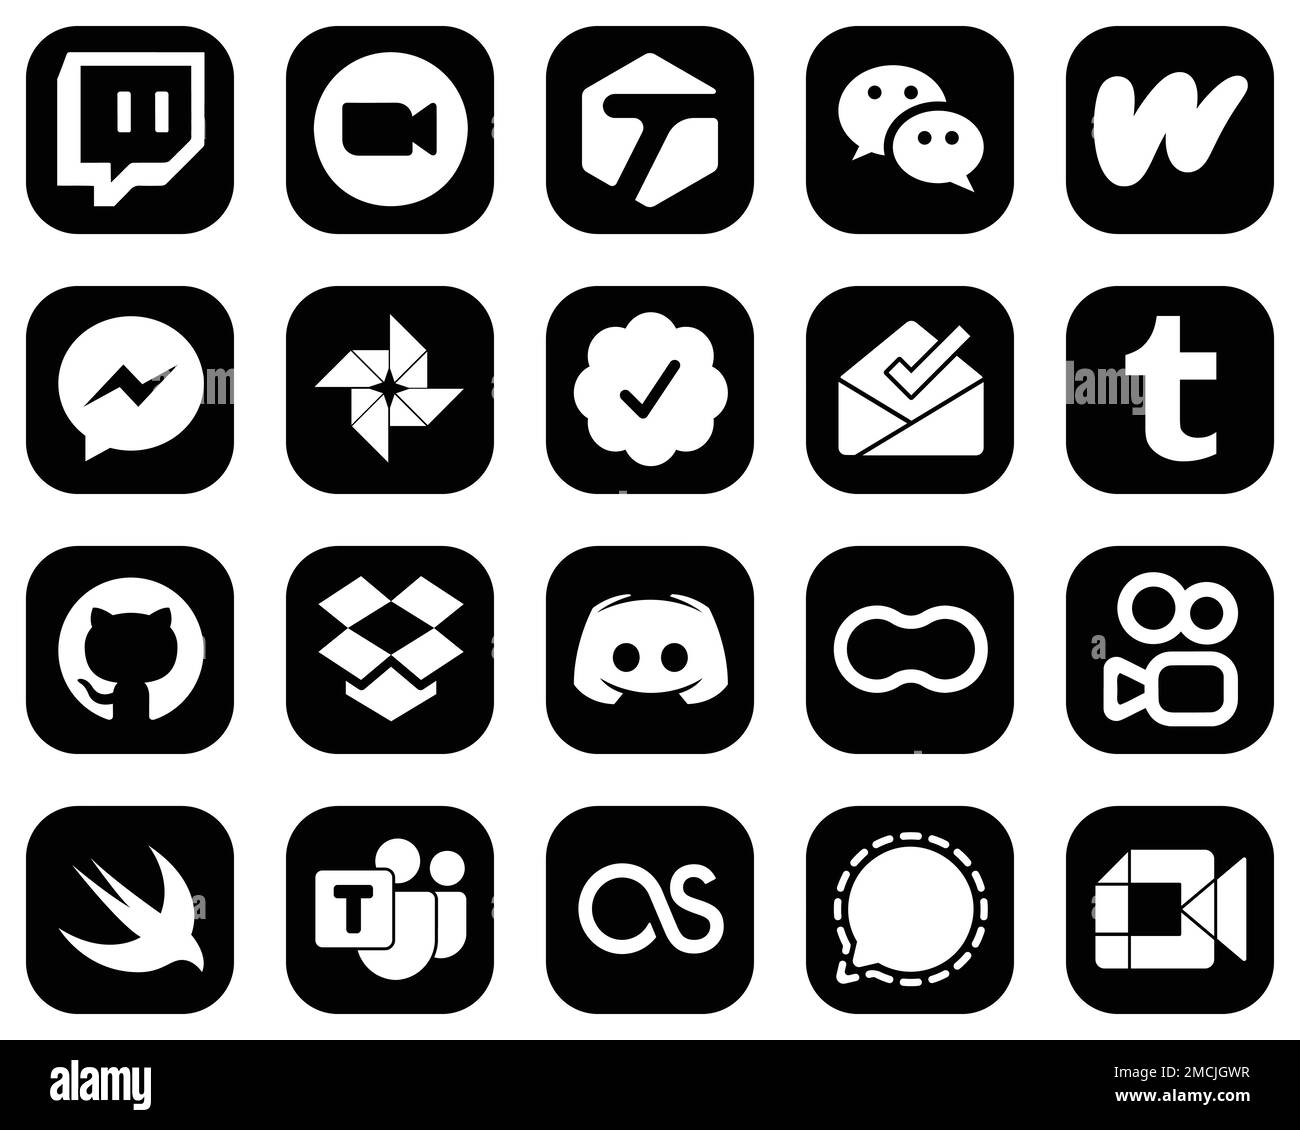 Github Logo - Free social media icons